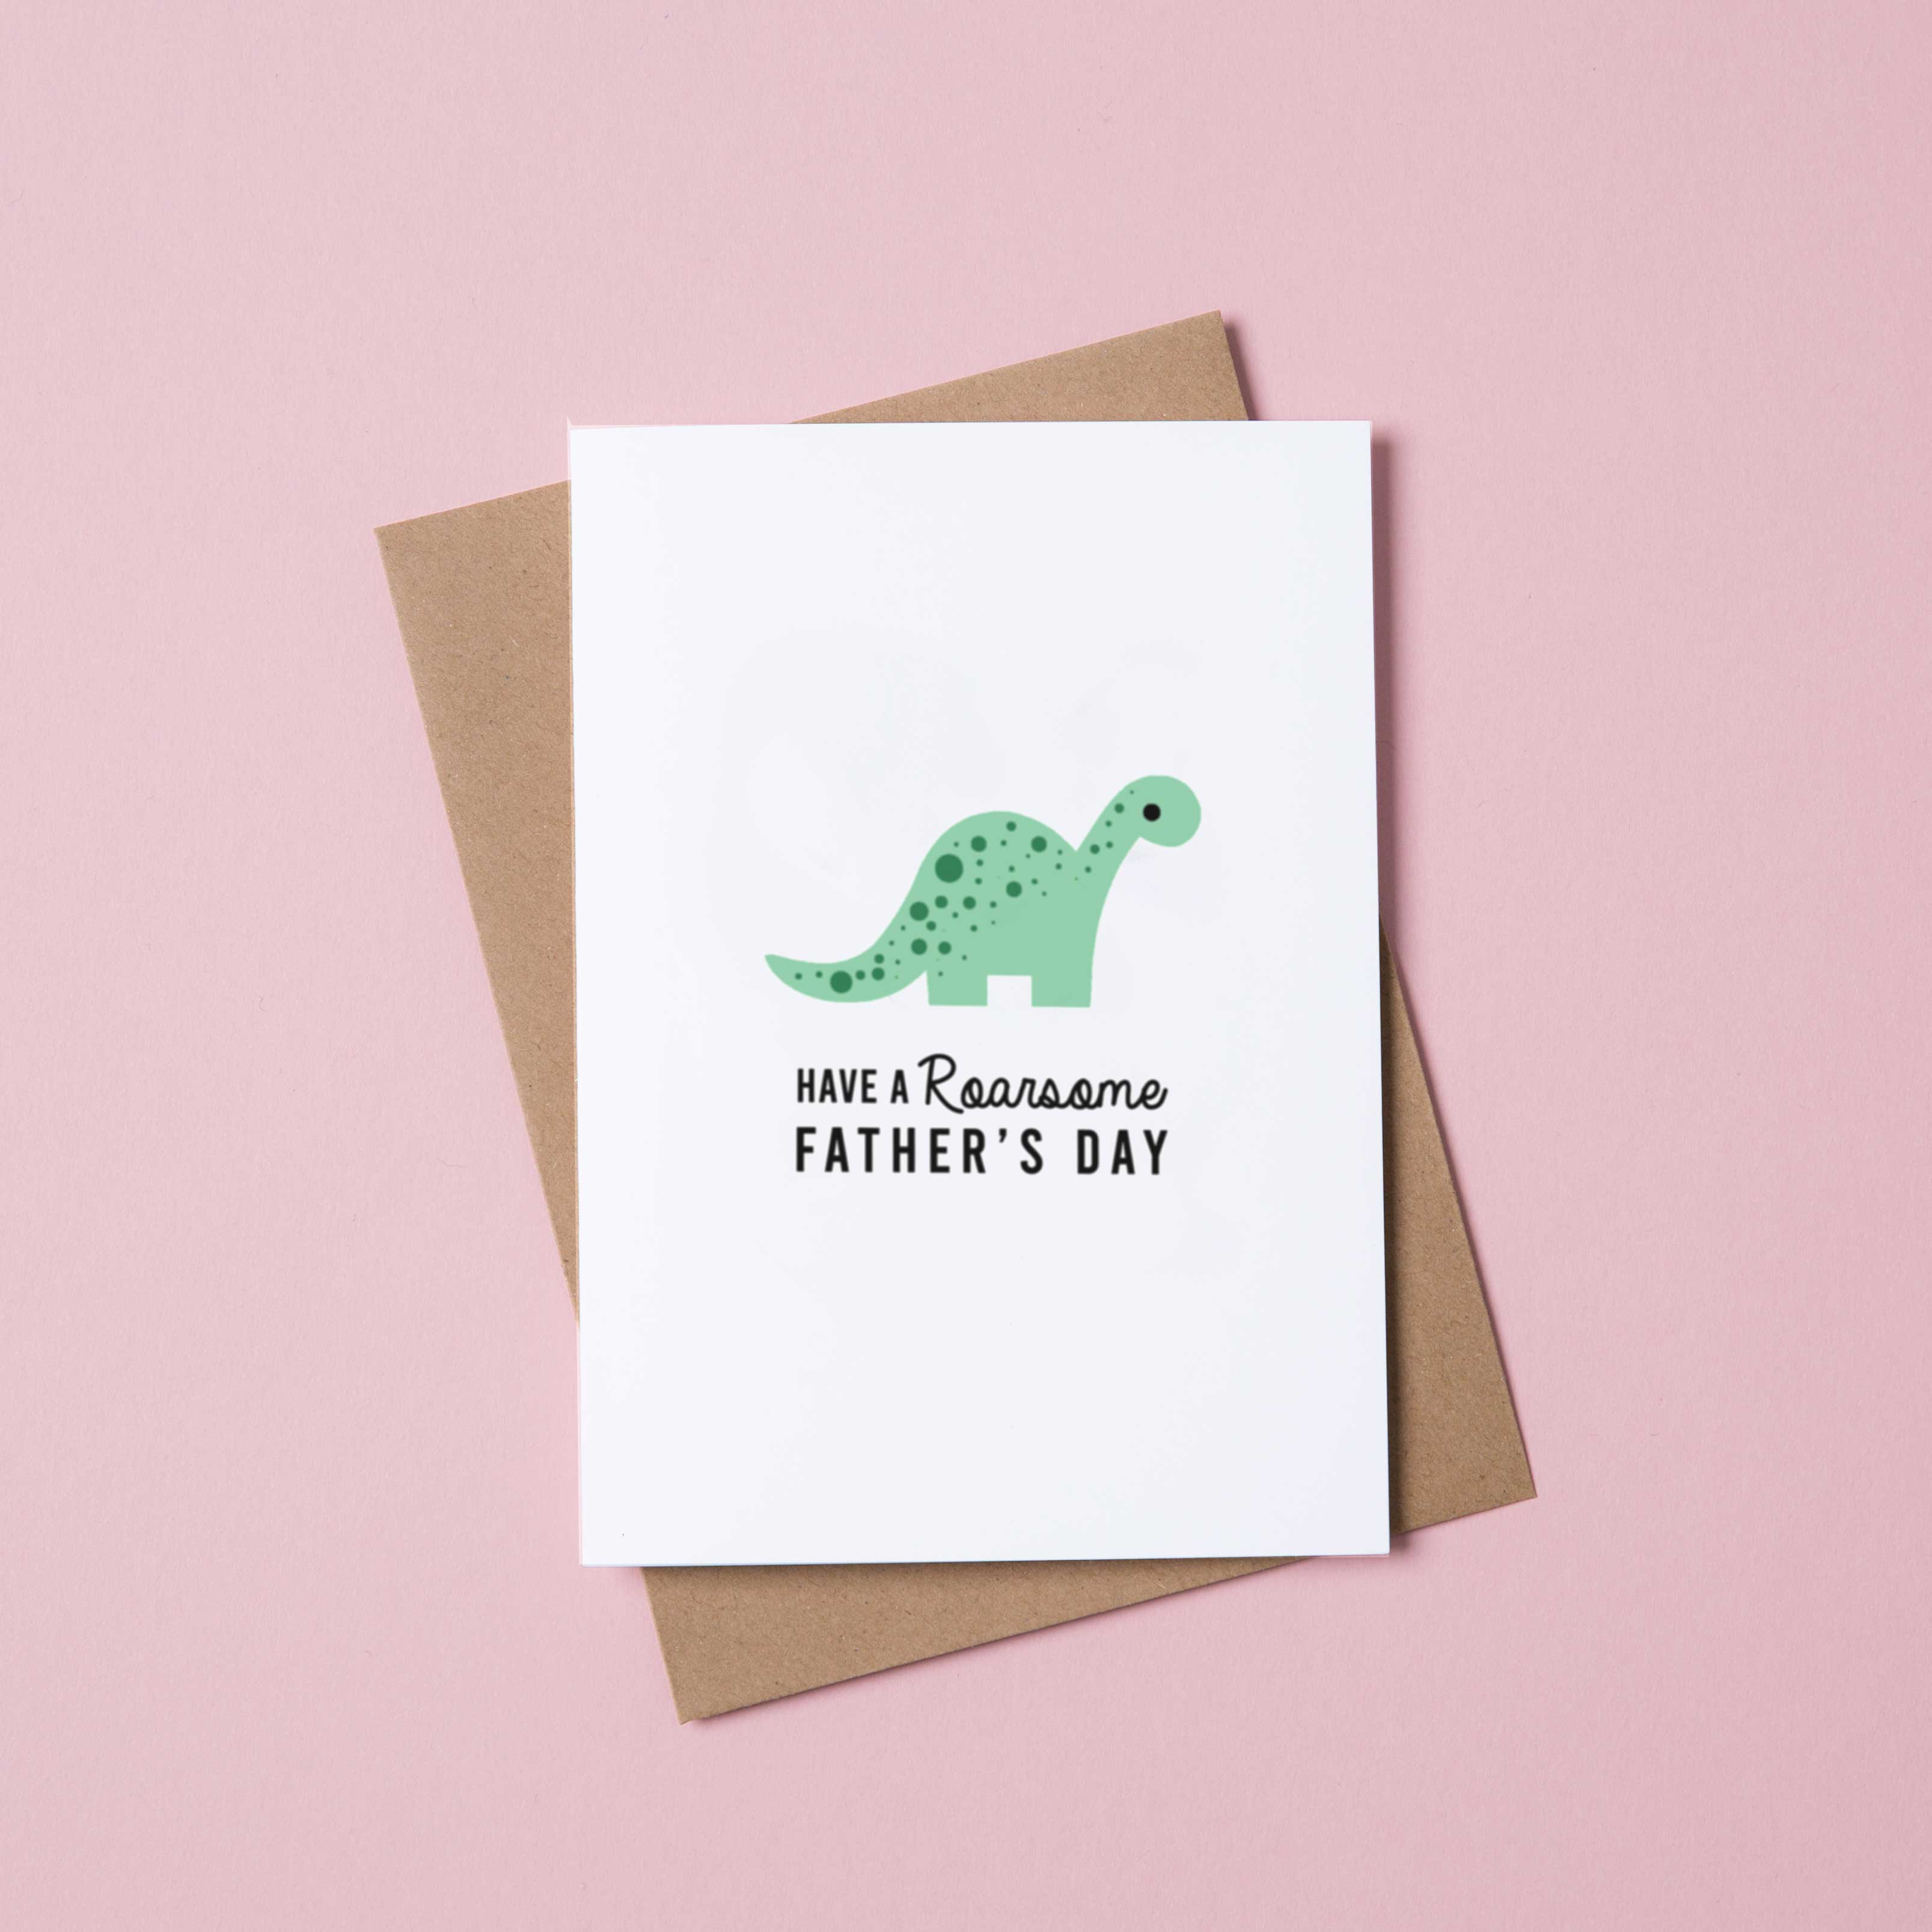 You're Roarsome!  Dinosaur cards, Cards handmade, Original card